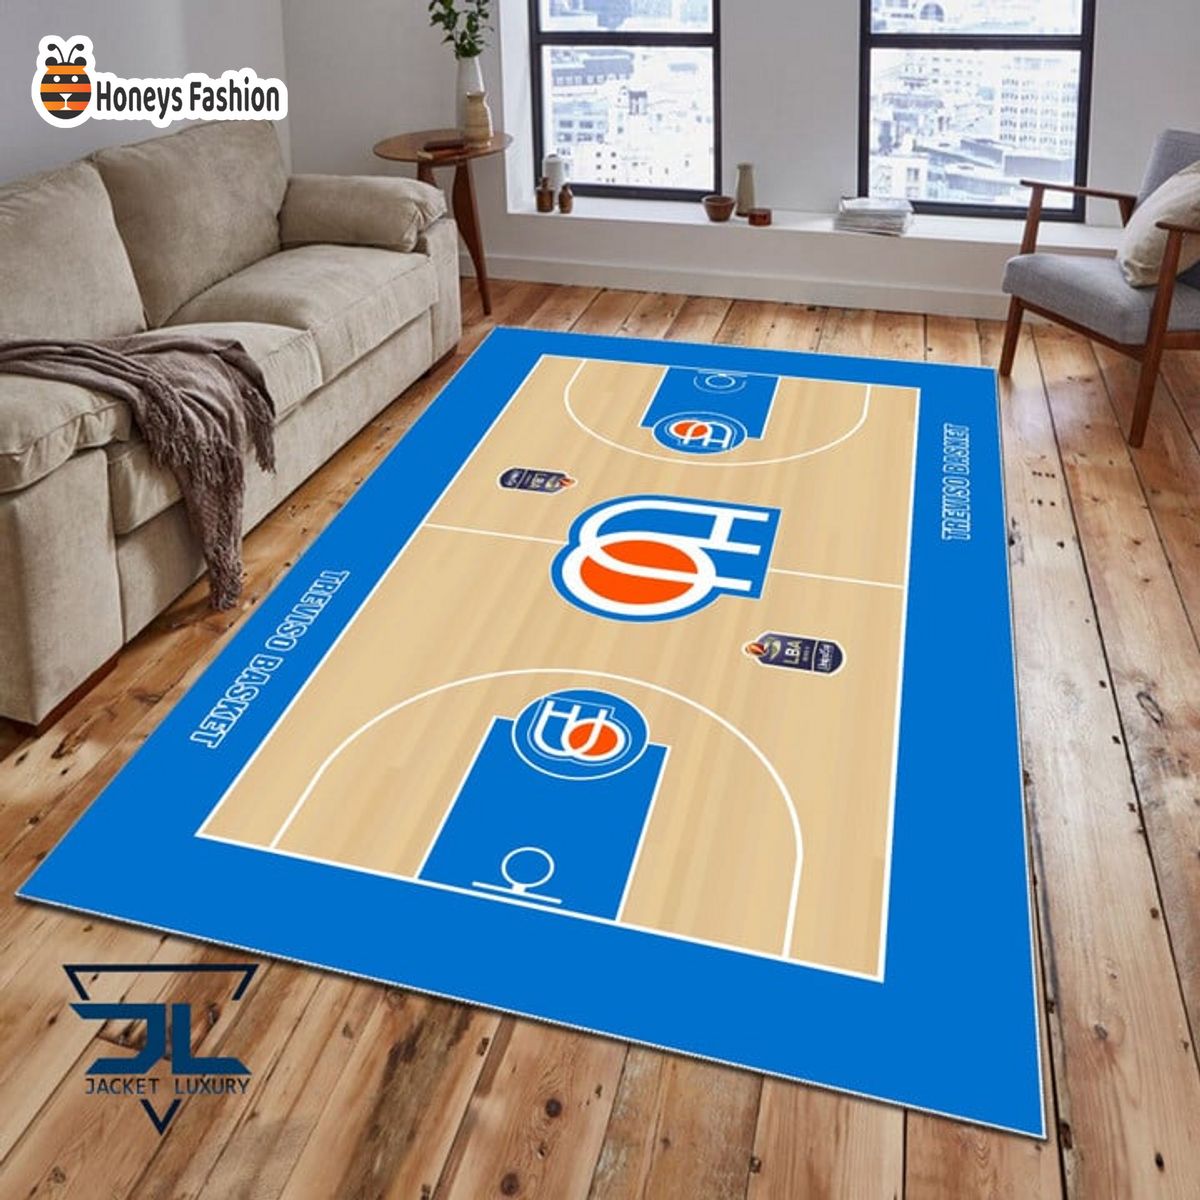 Treviso Basket Rug Carpet